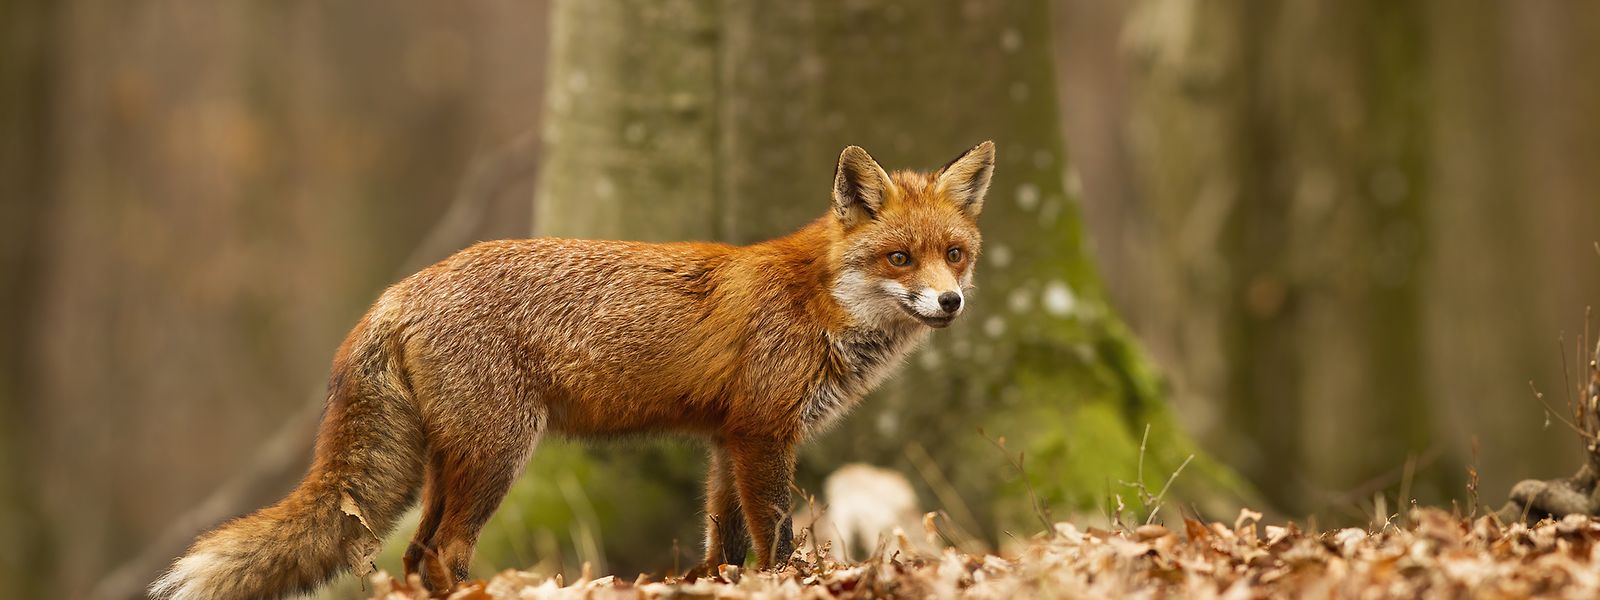 Niemand kann sagen, wie sich die Fuchspopulation in Luxemburg seit der Einführung des Jagdverbots entwickelt hat. Es gibt kein wissenschaftliches Monitoring vom Vorkommen, der Verbreitung und Bestandsentwicklung des Fuchses.